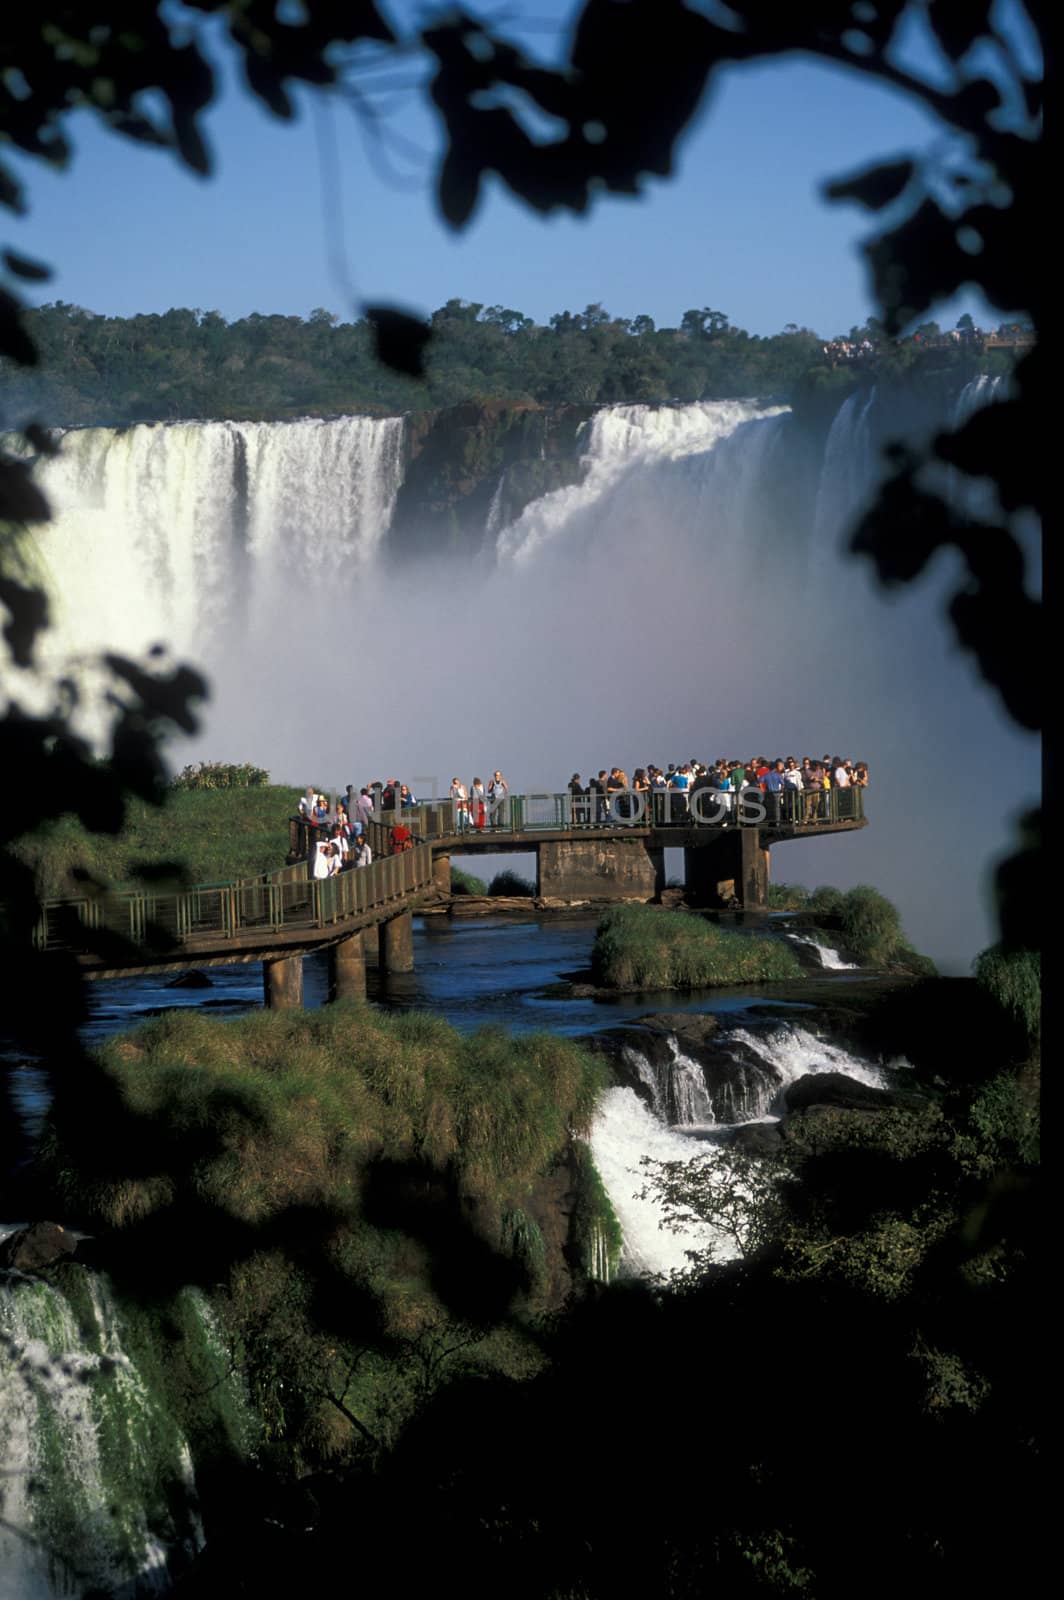 Viewing platform full of people at Iguacu Falls, Brazil.